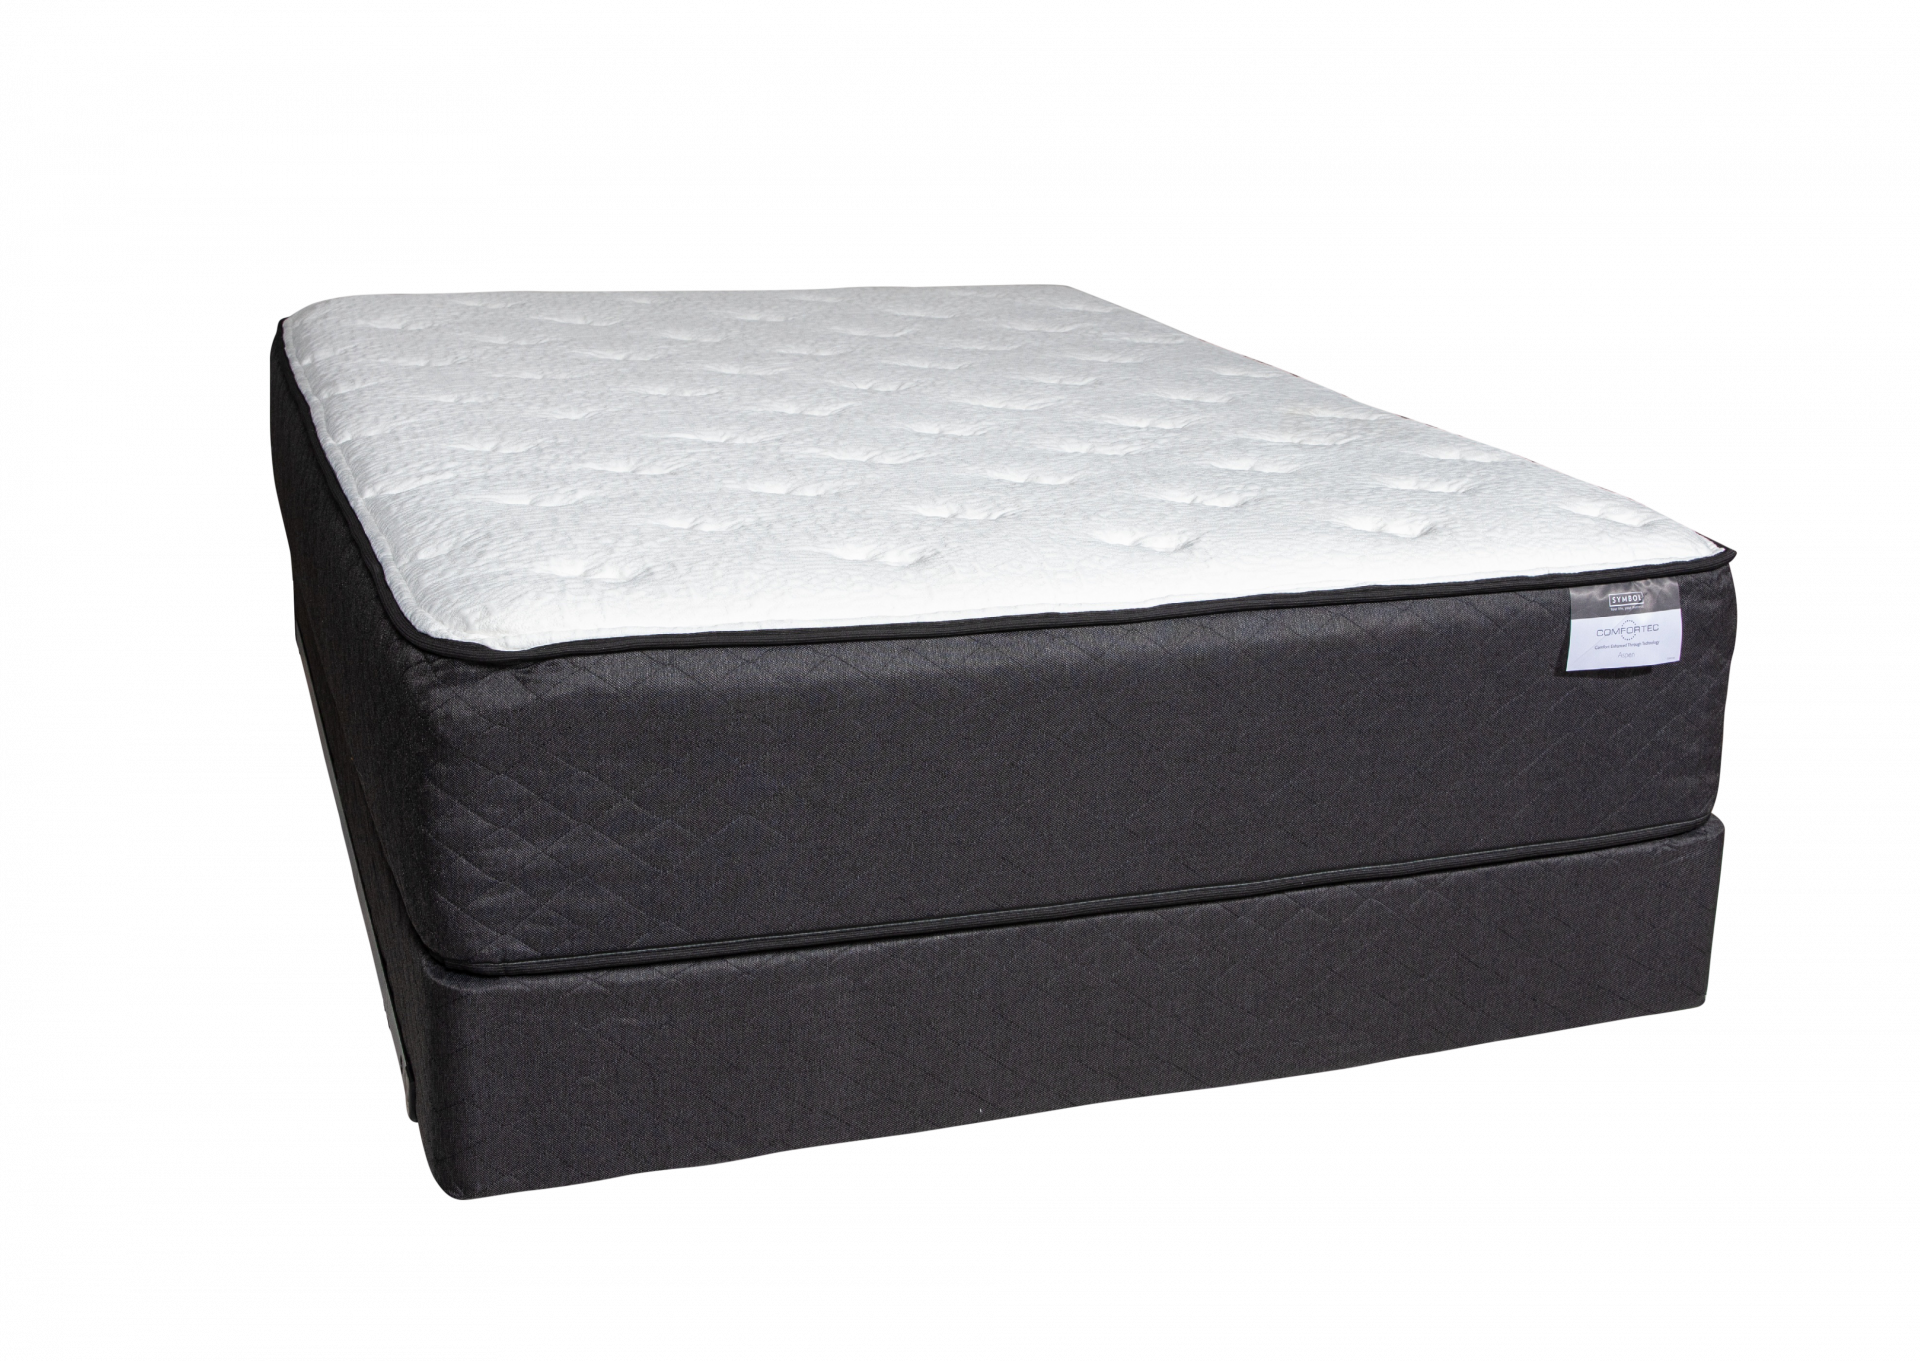 Aspen Luxury Firm King size mattress set by Symbol Mattress,Symbol Mattress